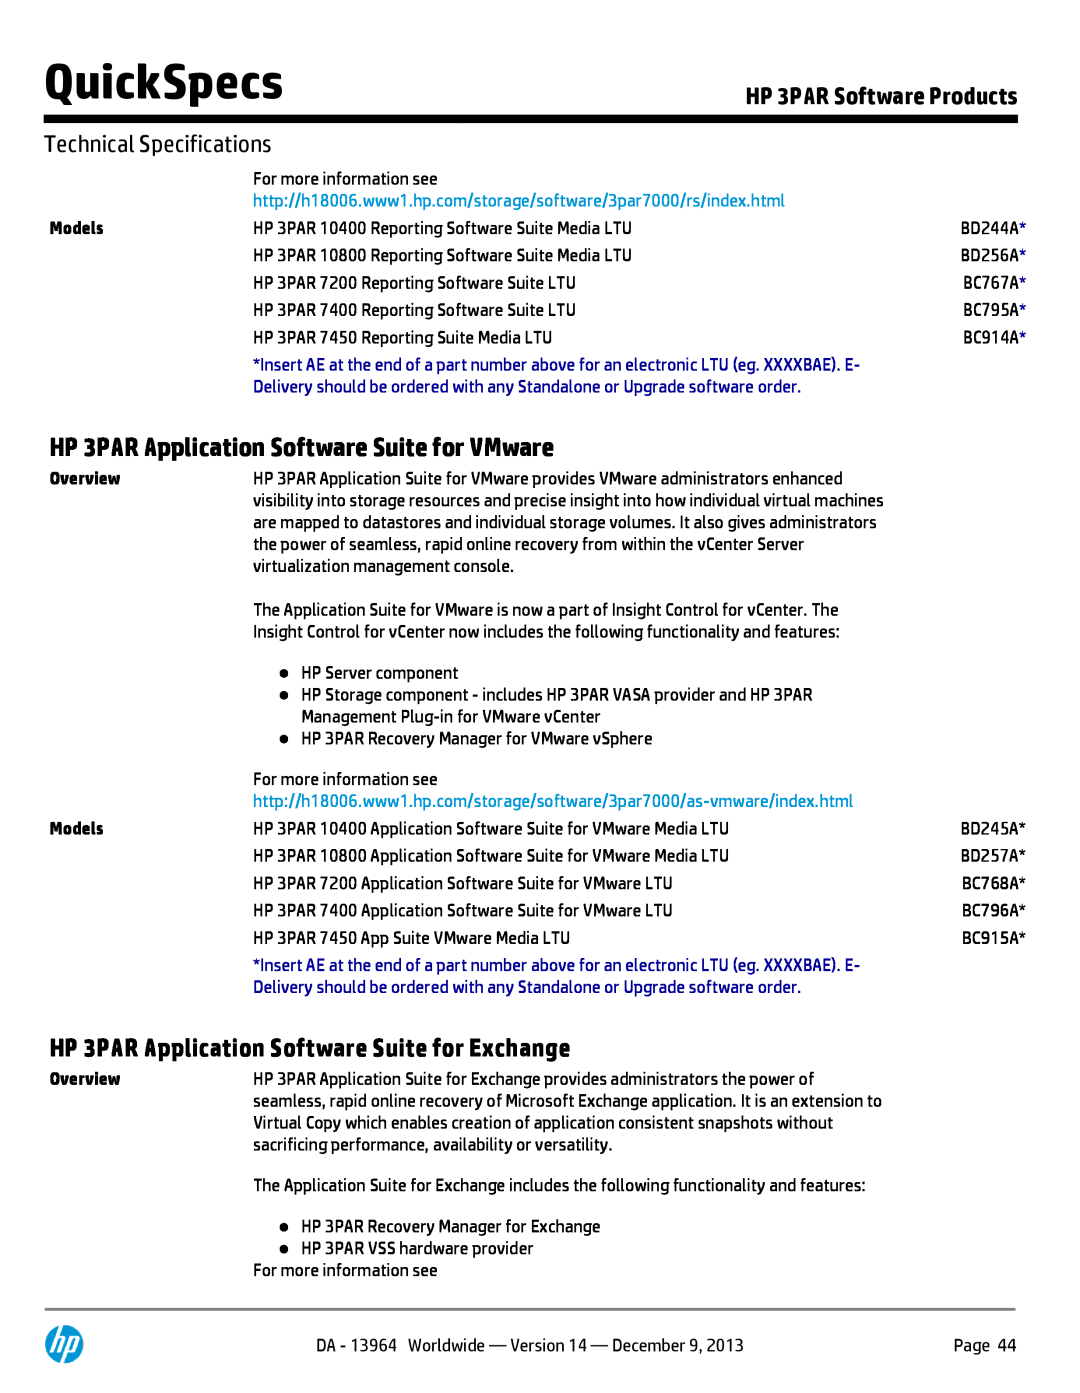 HP 7200 BC767A HP 3PAR Application Software Suite for VMware, HP 3PAR Application Software Suite for Exchange, QuickSpecs 